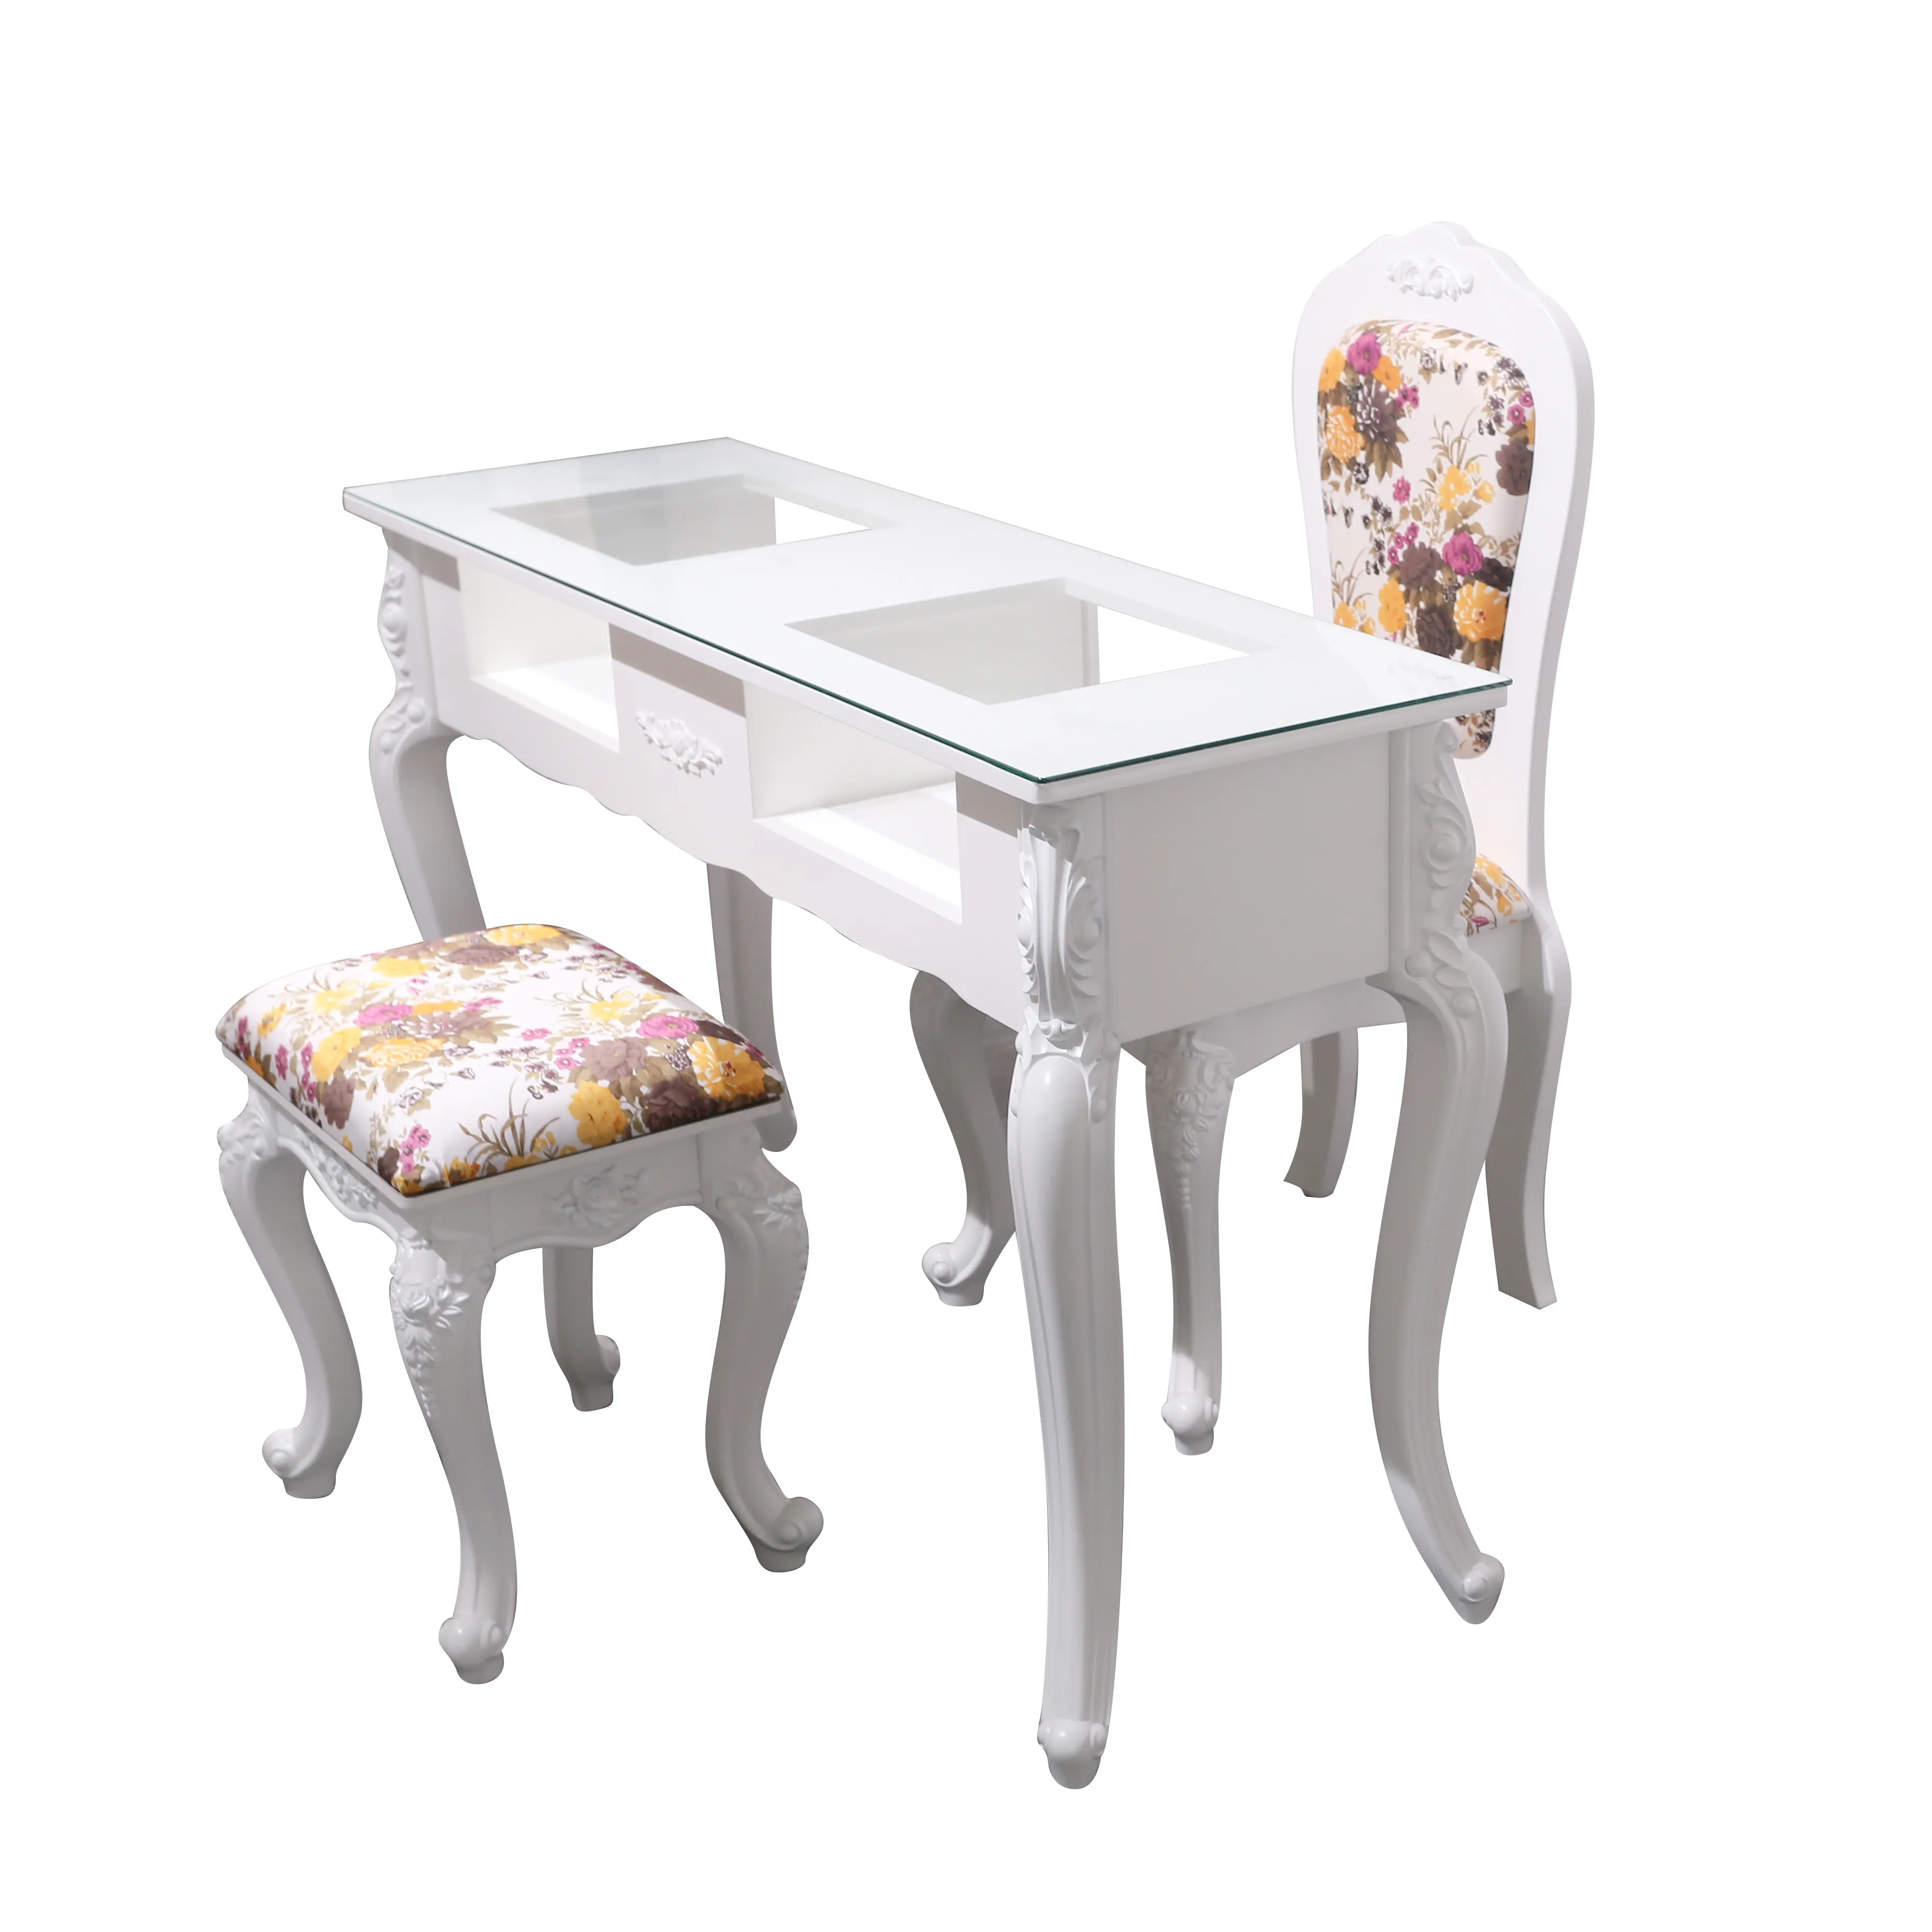 유럽식 품질 흰색 매니큐어 테이블 살롱 가구 매니큐어 의자 세트 네일 테이블 판매